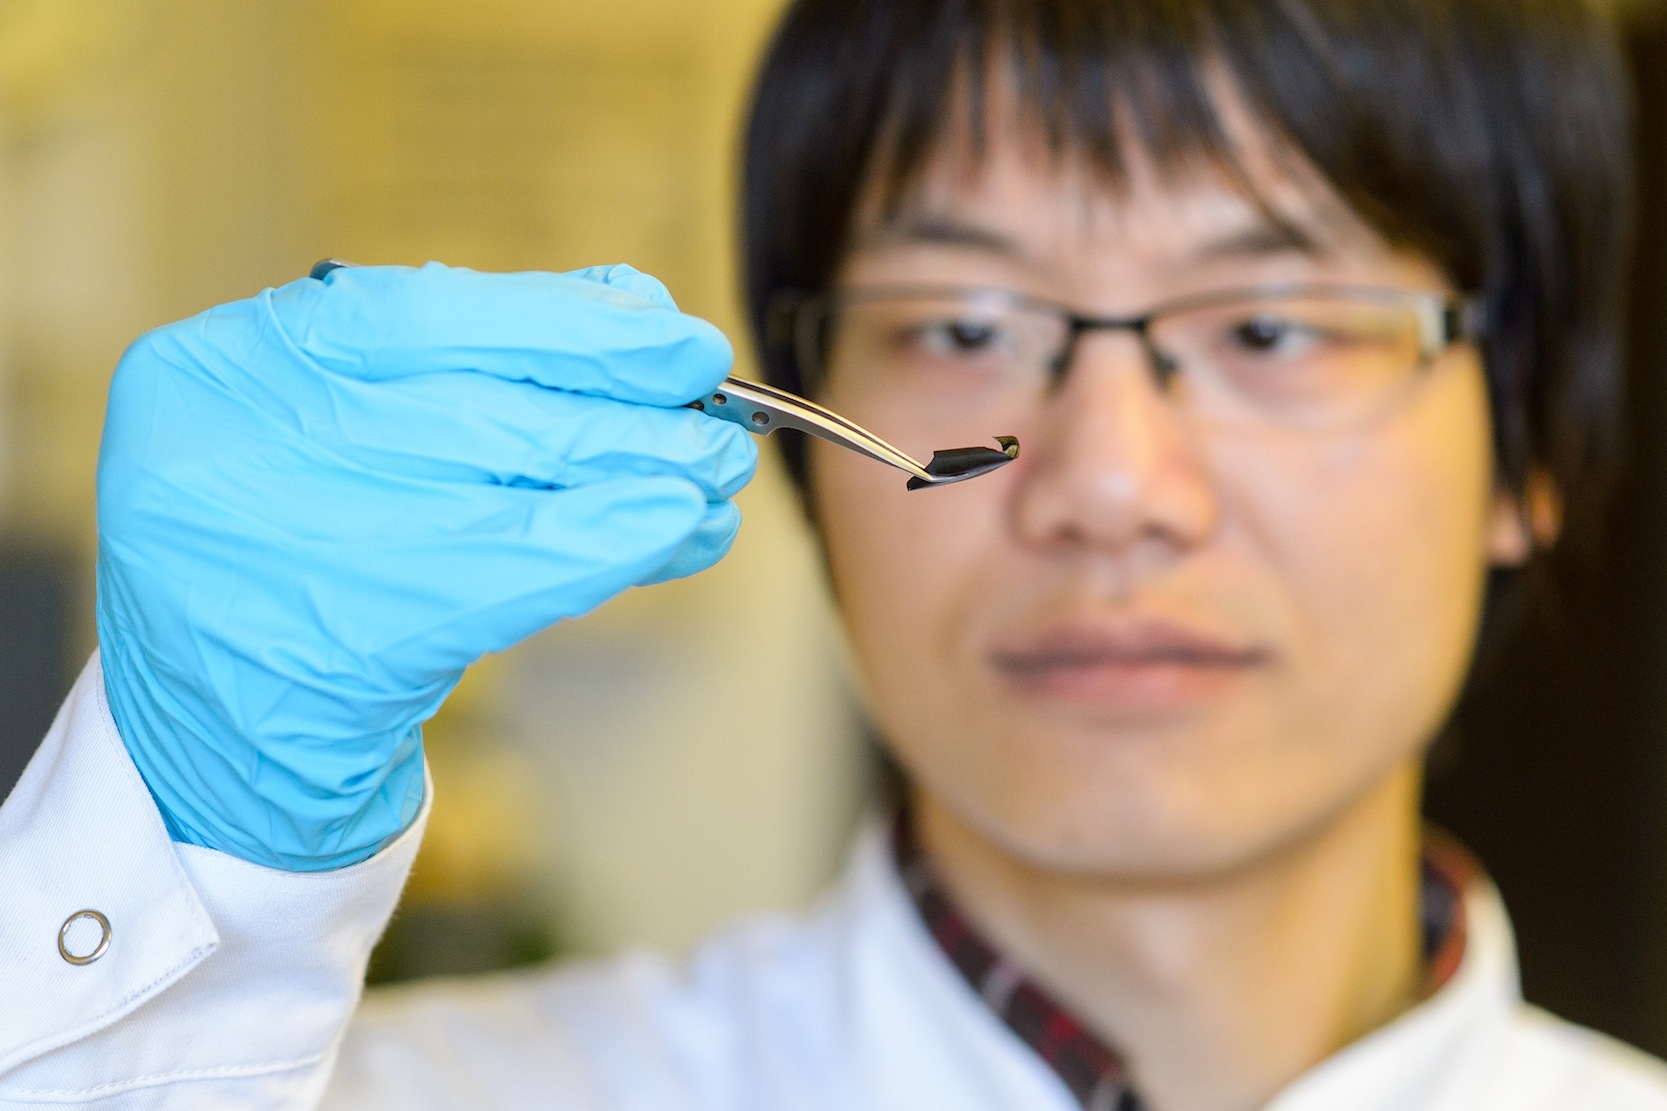 Die dünne Supraleiter-Folie macht neue Nano-Beschichtungen etwa für den Weltraum oder die Medizin möglich. Doktorand XianLin Zeng aus dem Team von Uwe Hartmann hat die Folie mitentwickelt.